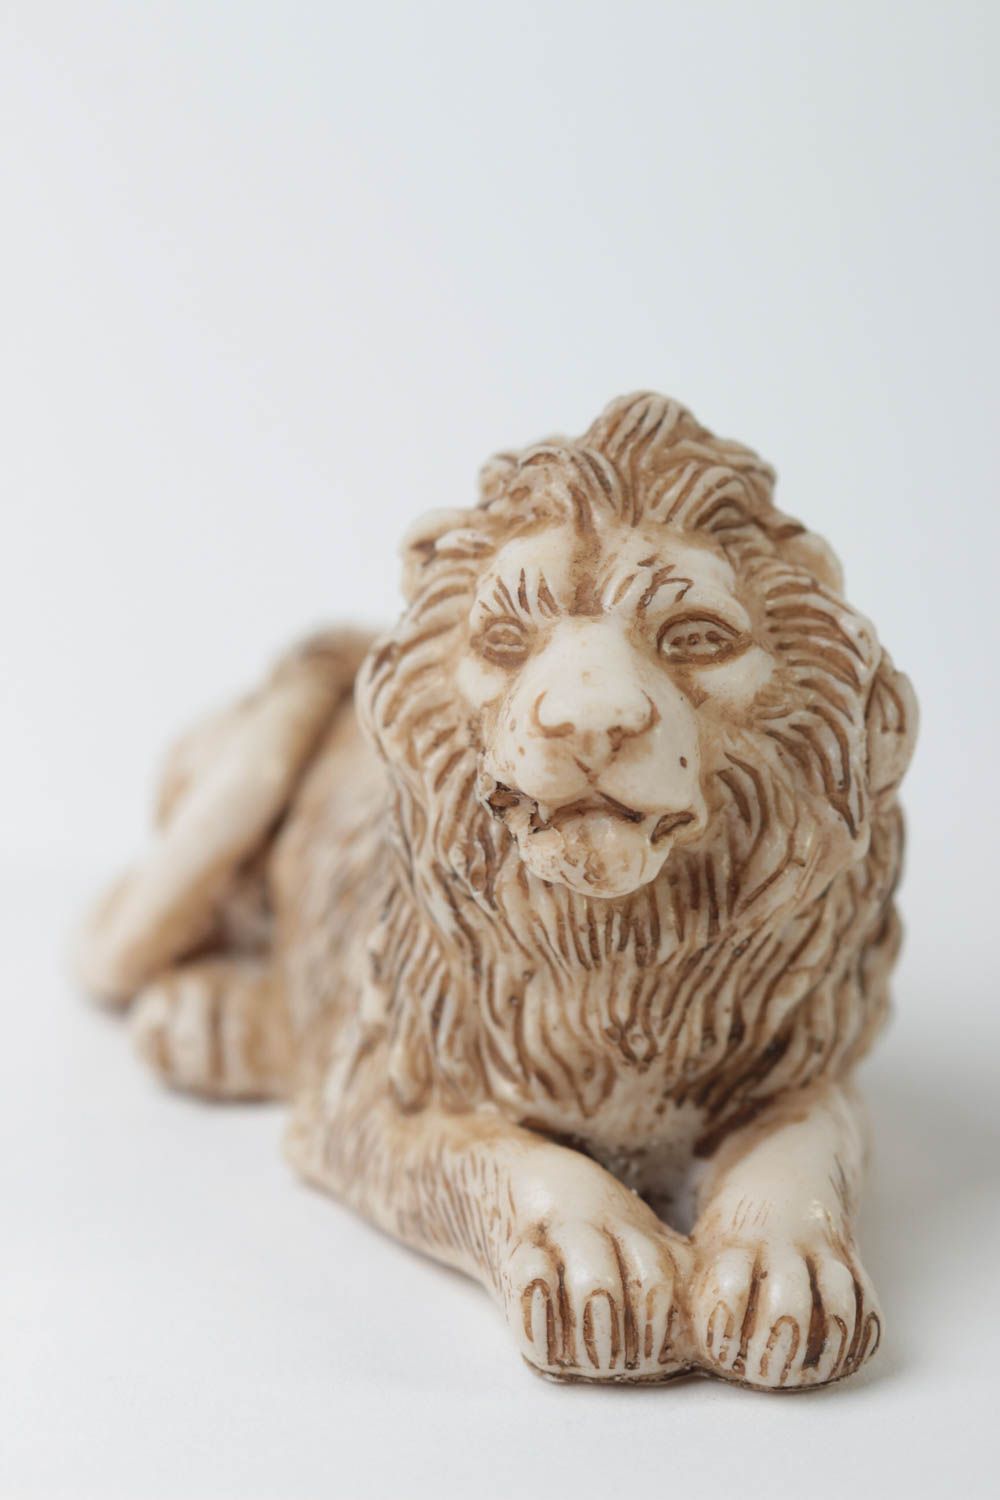 Миниатюрная статуэтка из полимерной смолы в виде лежащего льва ручной работы фото 2